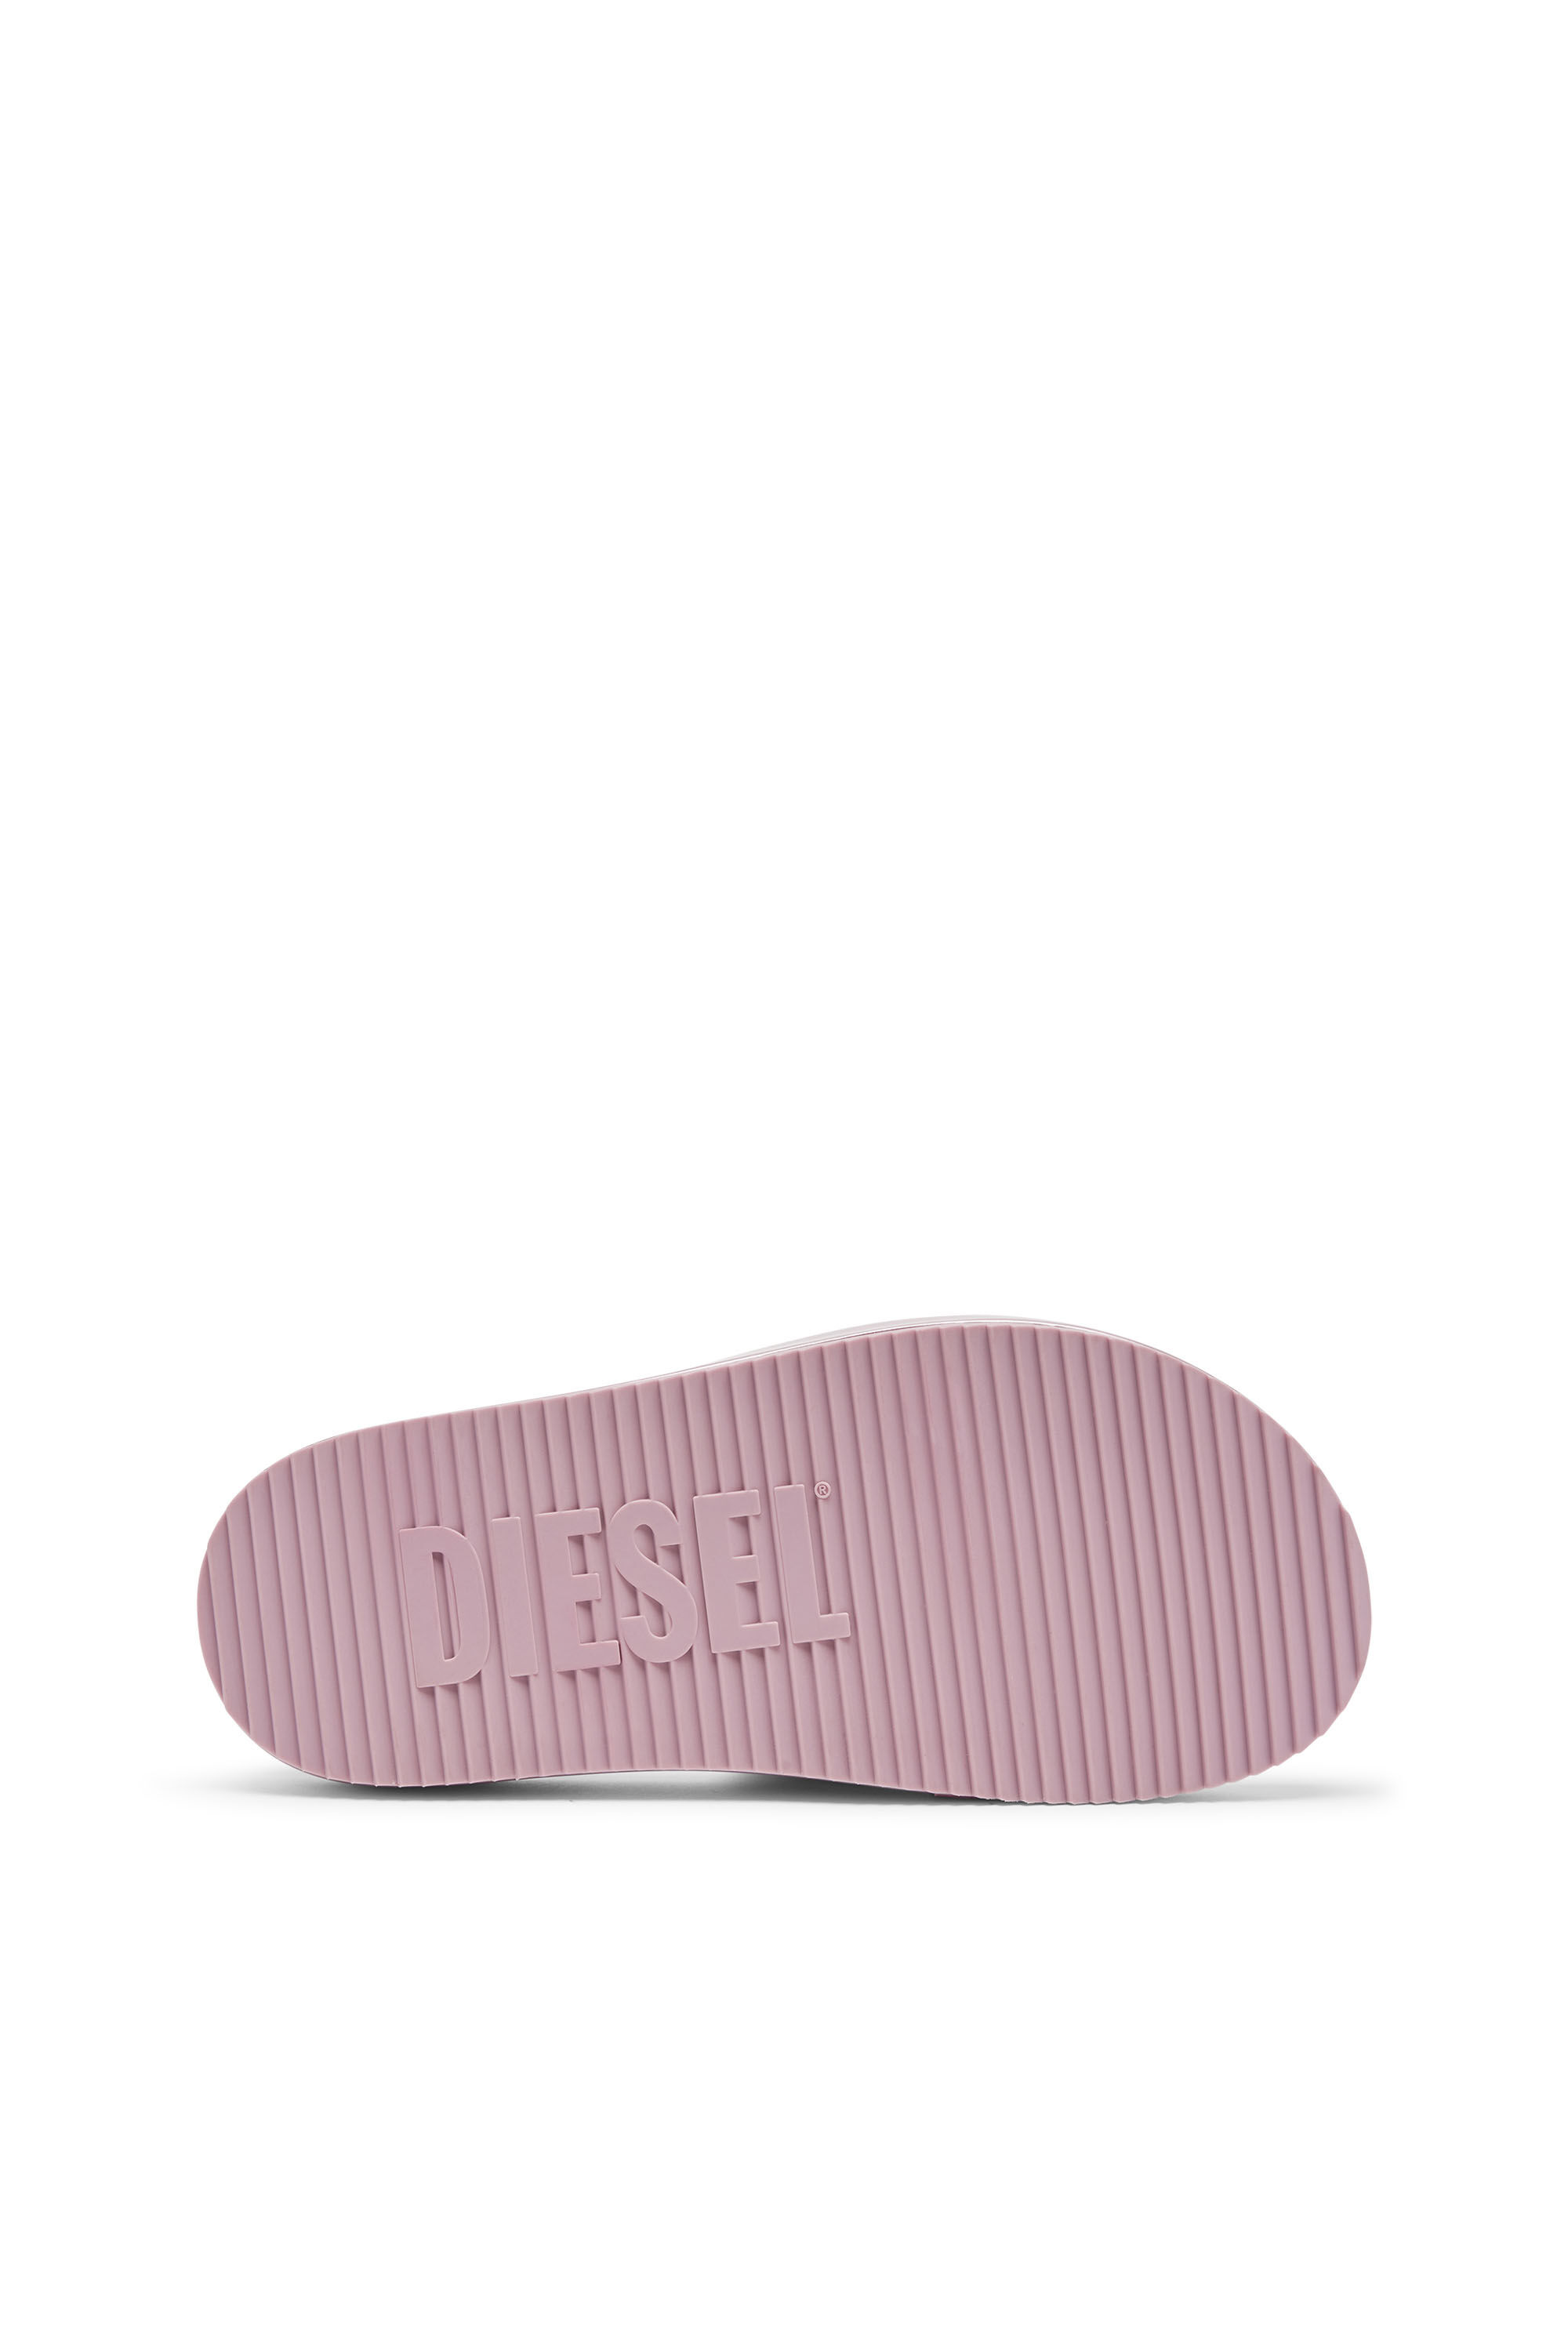 Diesel - SA-SLIDE D OVAL W, Woman Sa-Slide D-Metallic slide sandals with Oval D strap in Violet - Image 5